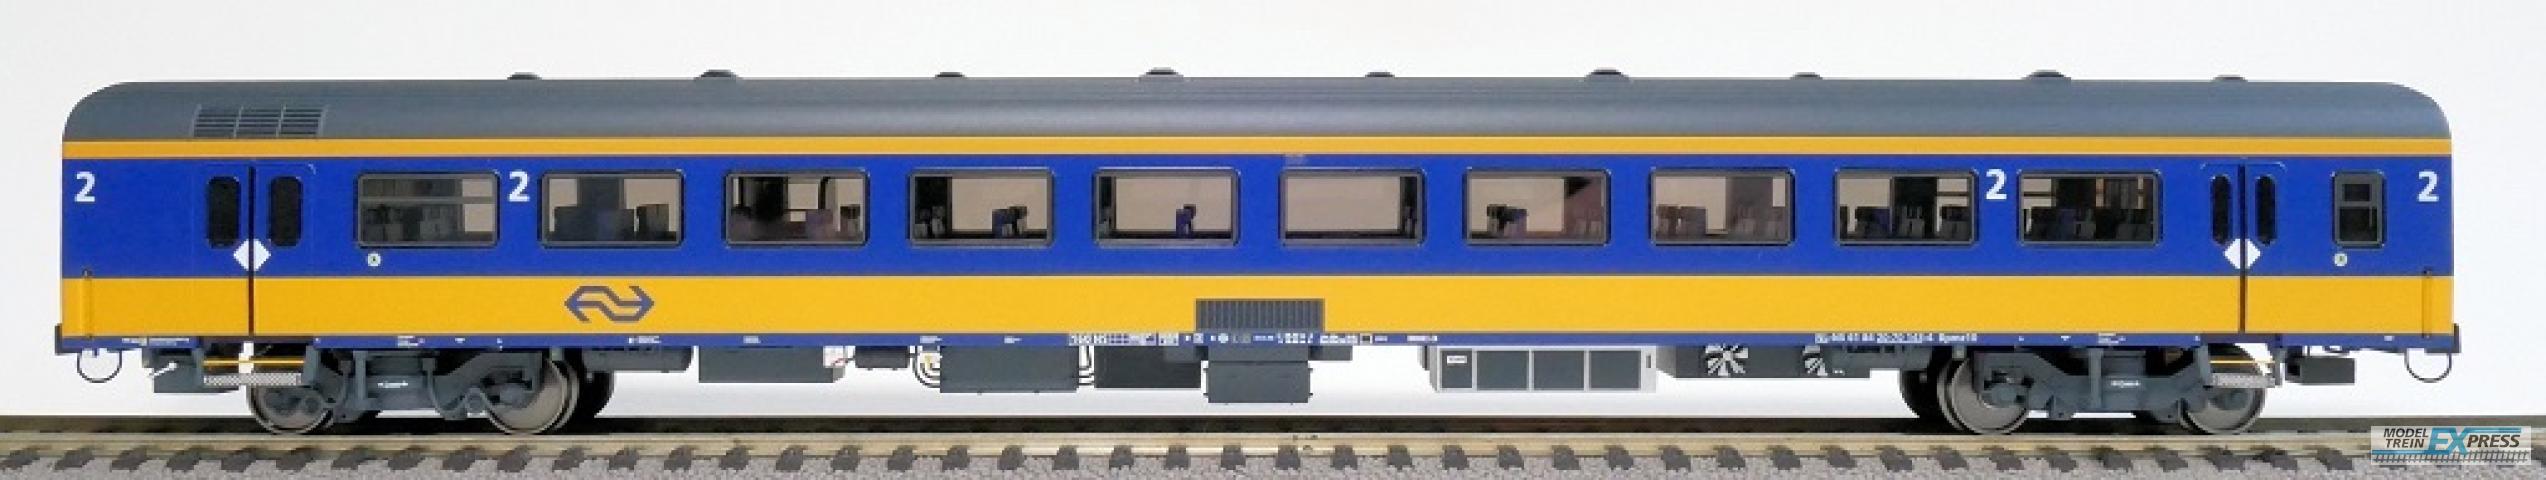 Exact-train 11016 NS ICRm Amsterdam - Breda für den Inlandseinsatz Reisezugwagen Bpmz10 ( Farbe Gelb / Blau), Ep. VI